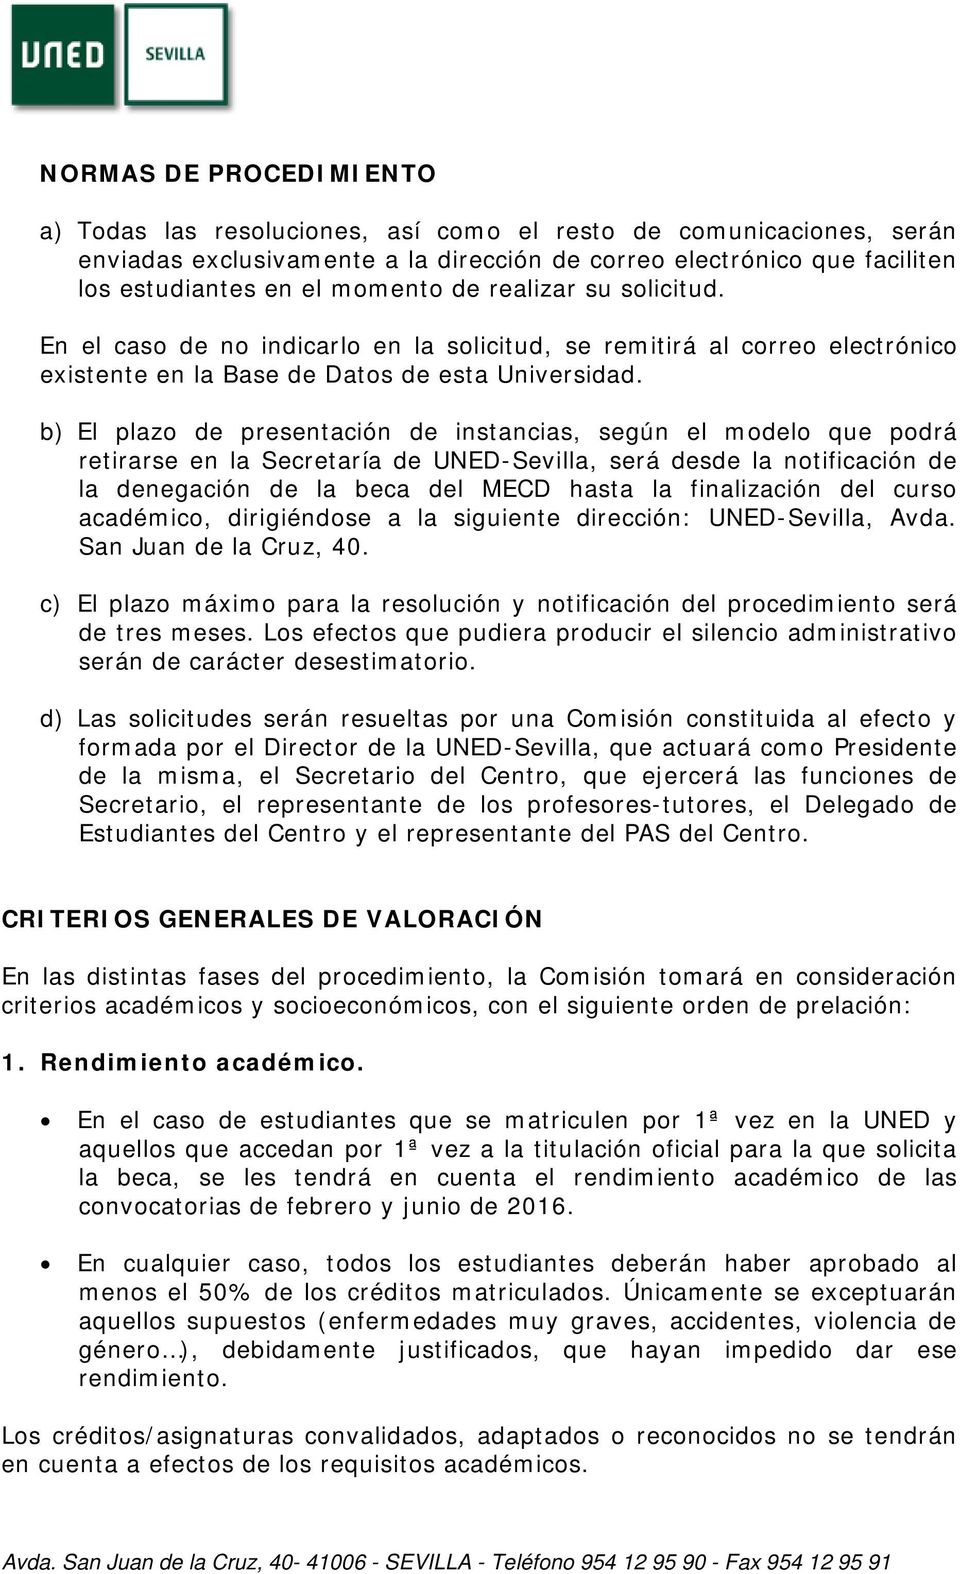 b) El plazo de presentación de instancias, según el modelo que podrá retirarse en la Secretaría de UNED-Sevilla, será desde la notificación de la denegación de la beca del MECD hasta la finalización